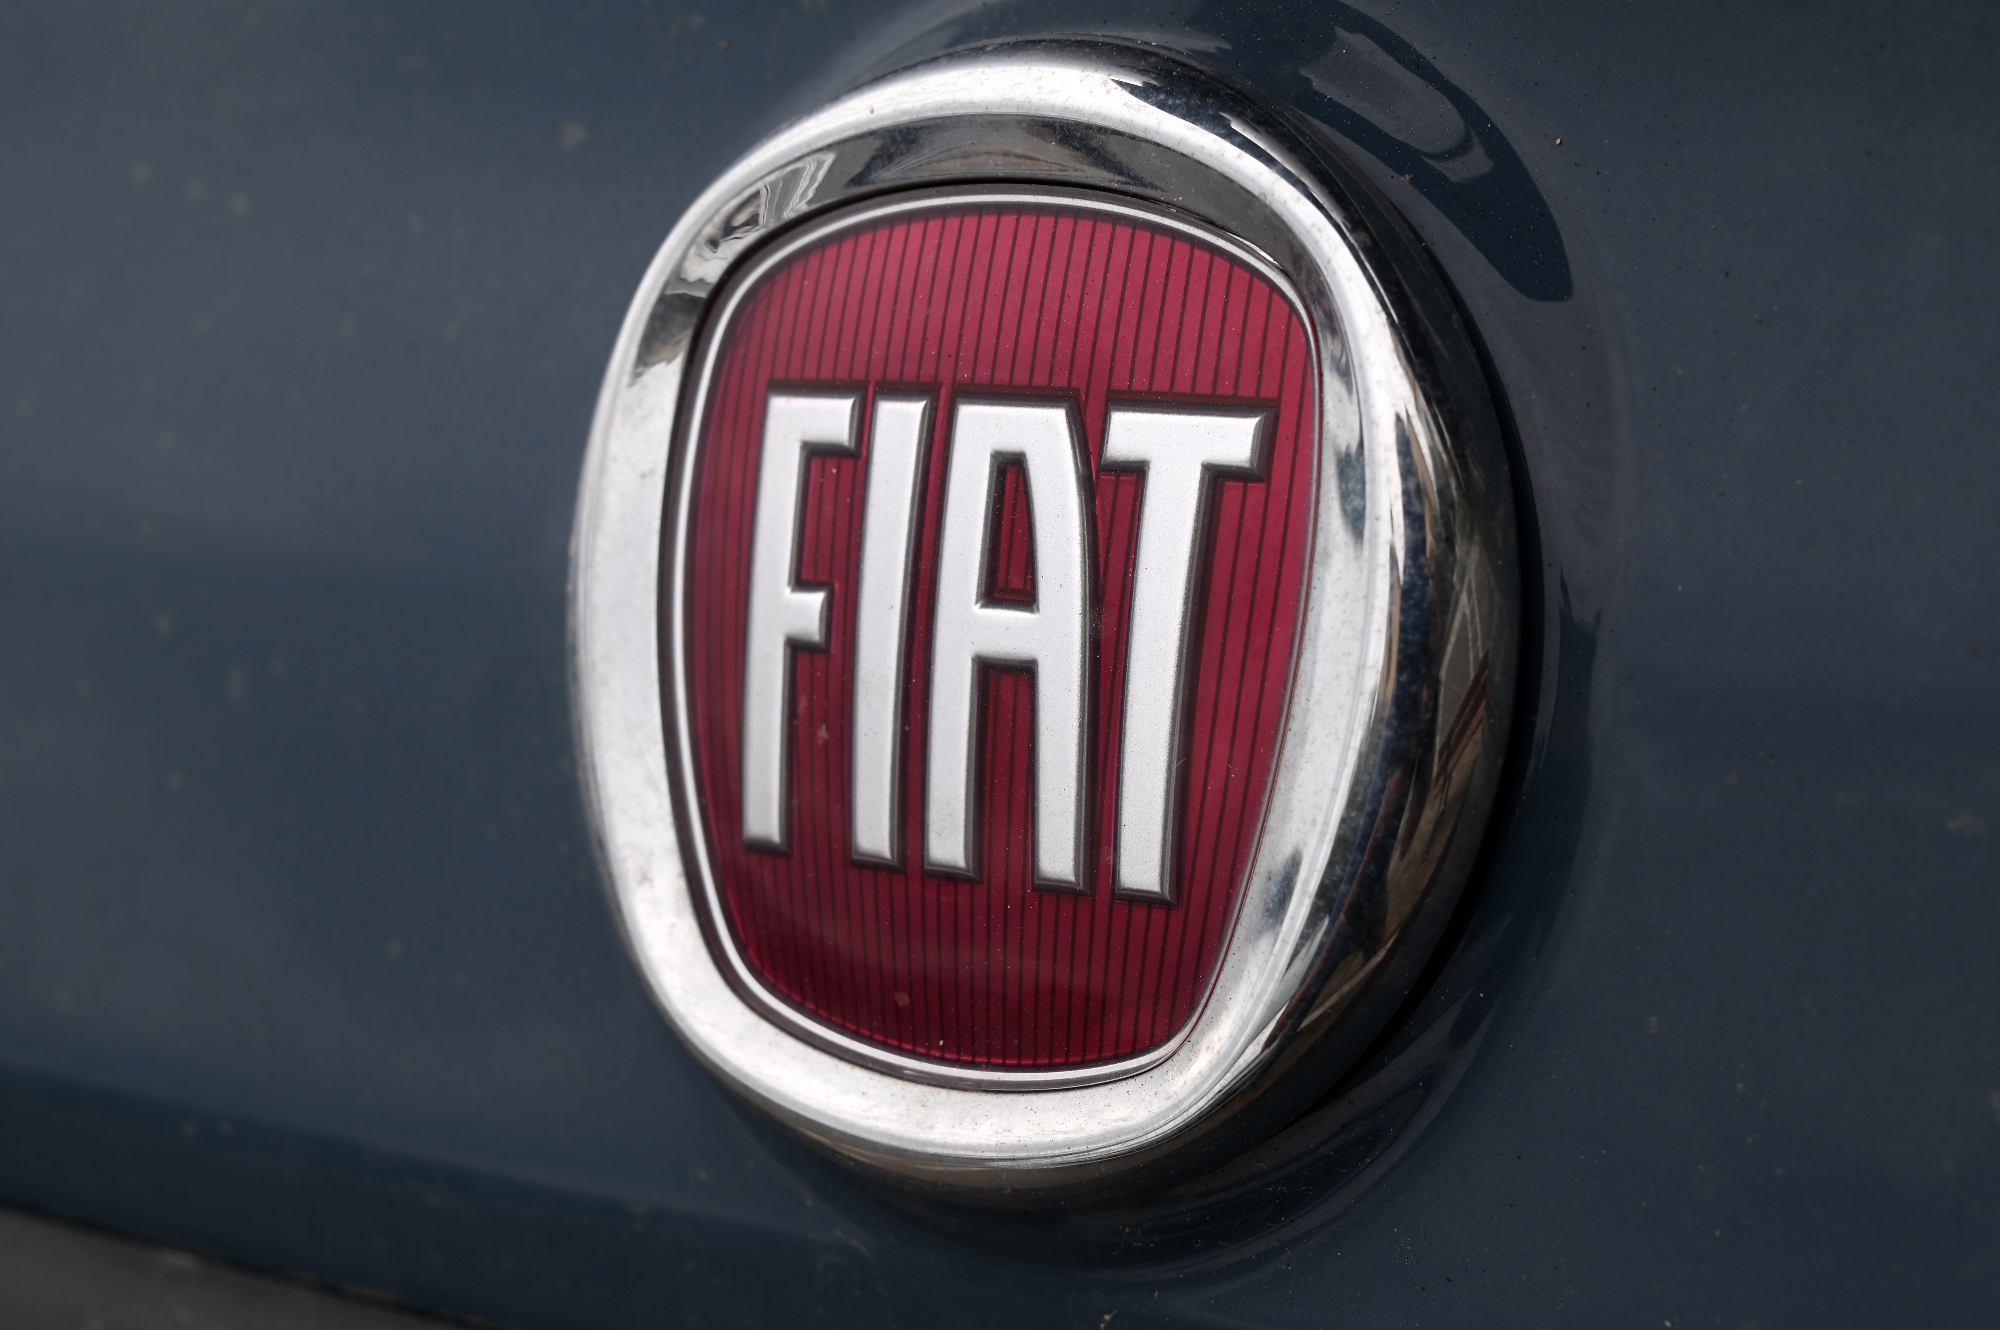 Gospodarsko vozilo Fiat za prevoz hladnih živil